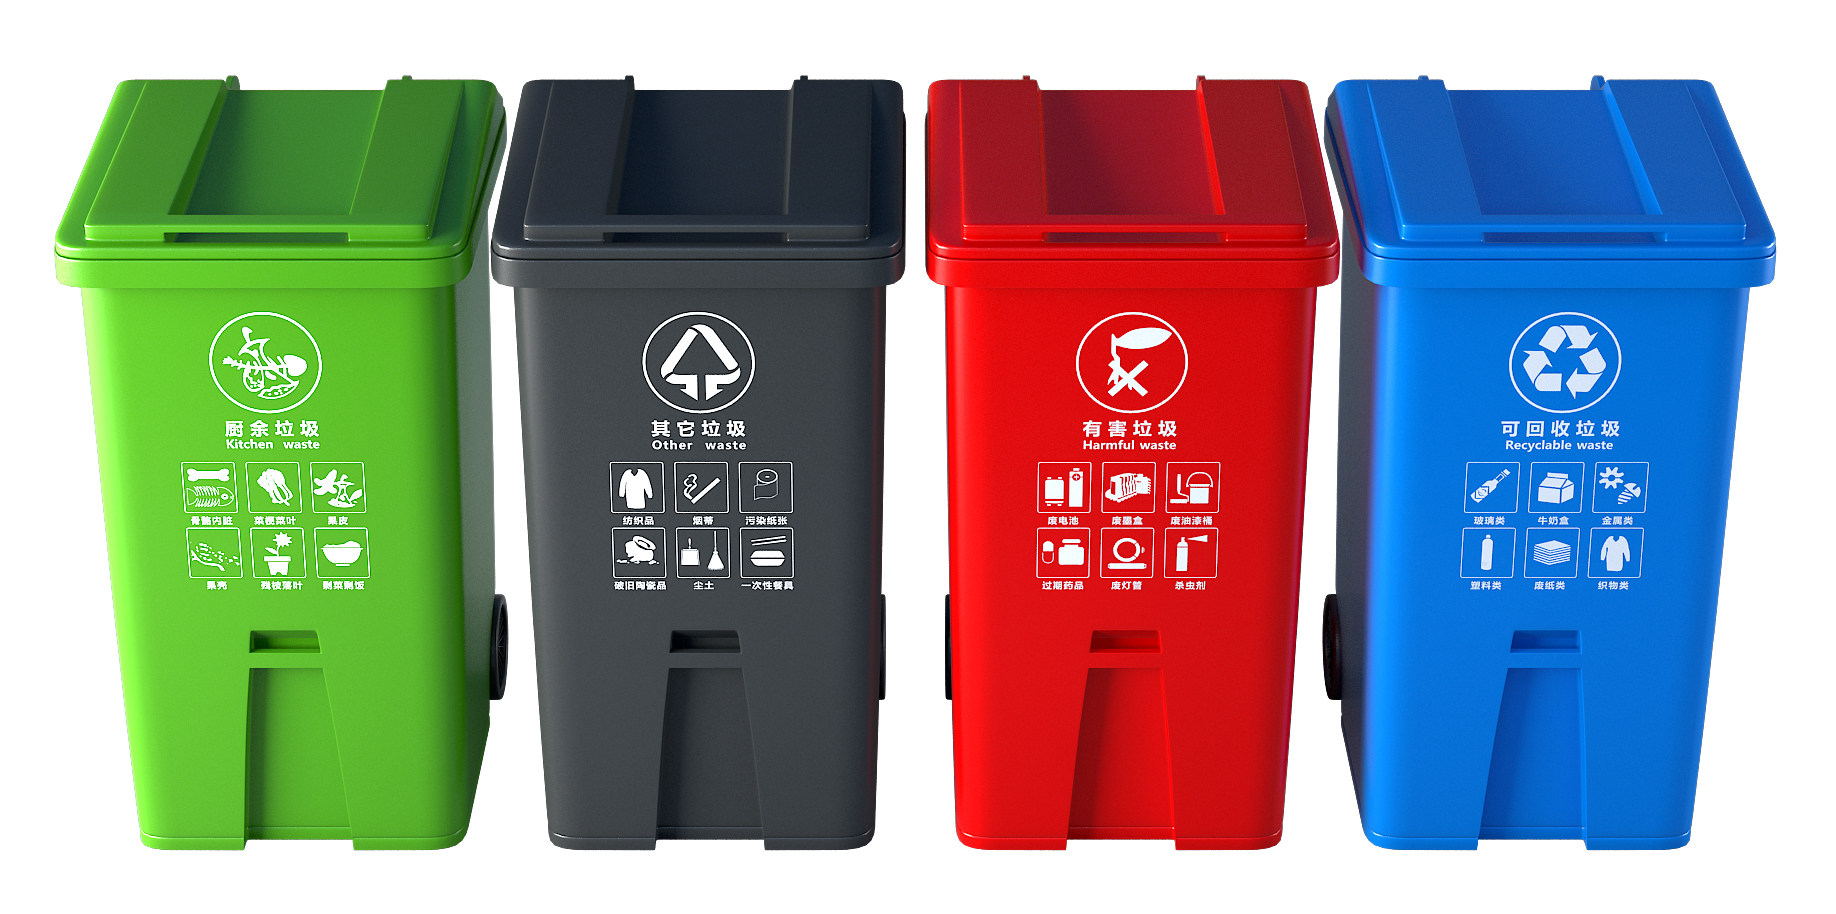 18现代分类垃圾桶塑料箱3D模型3d模型下载